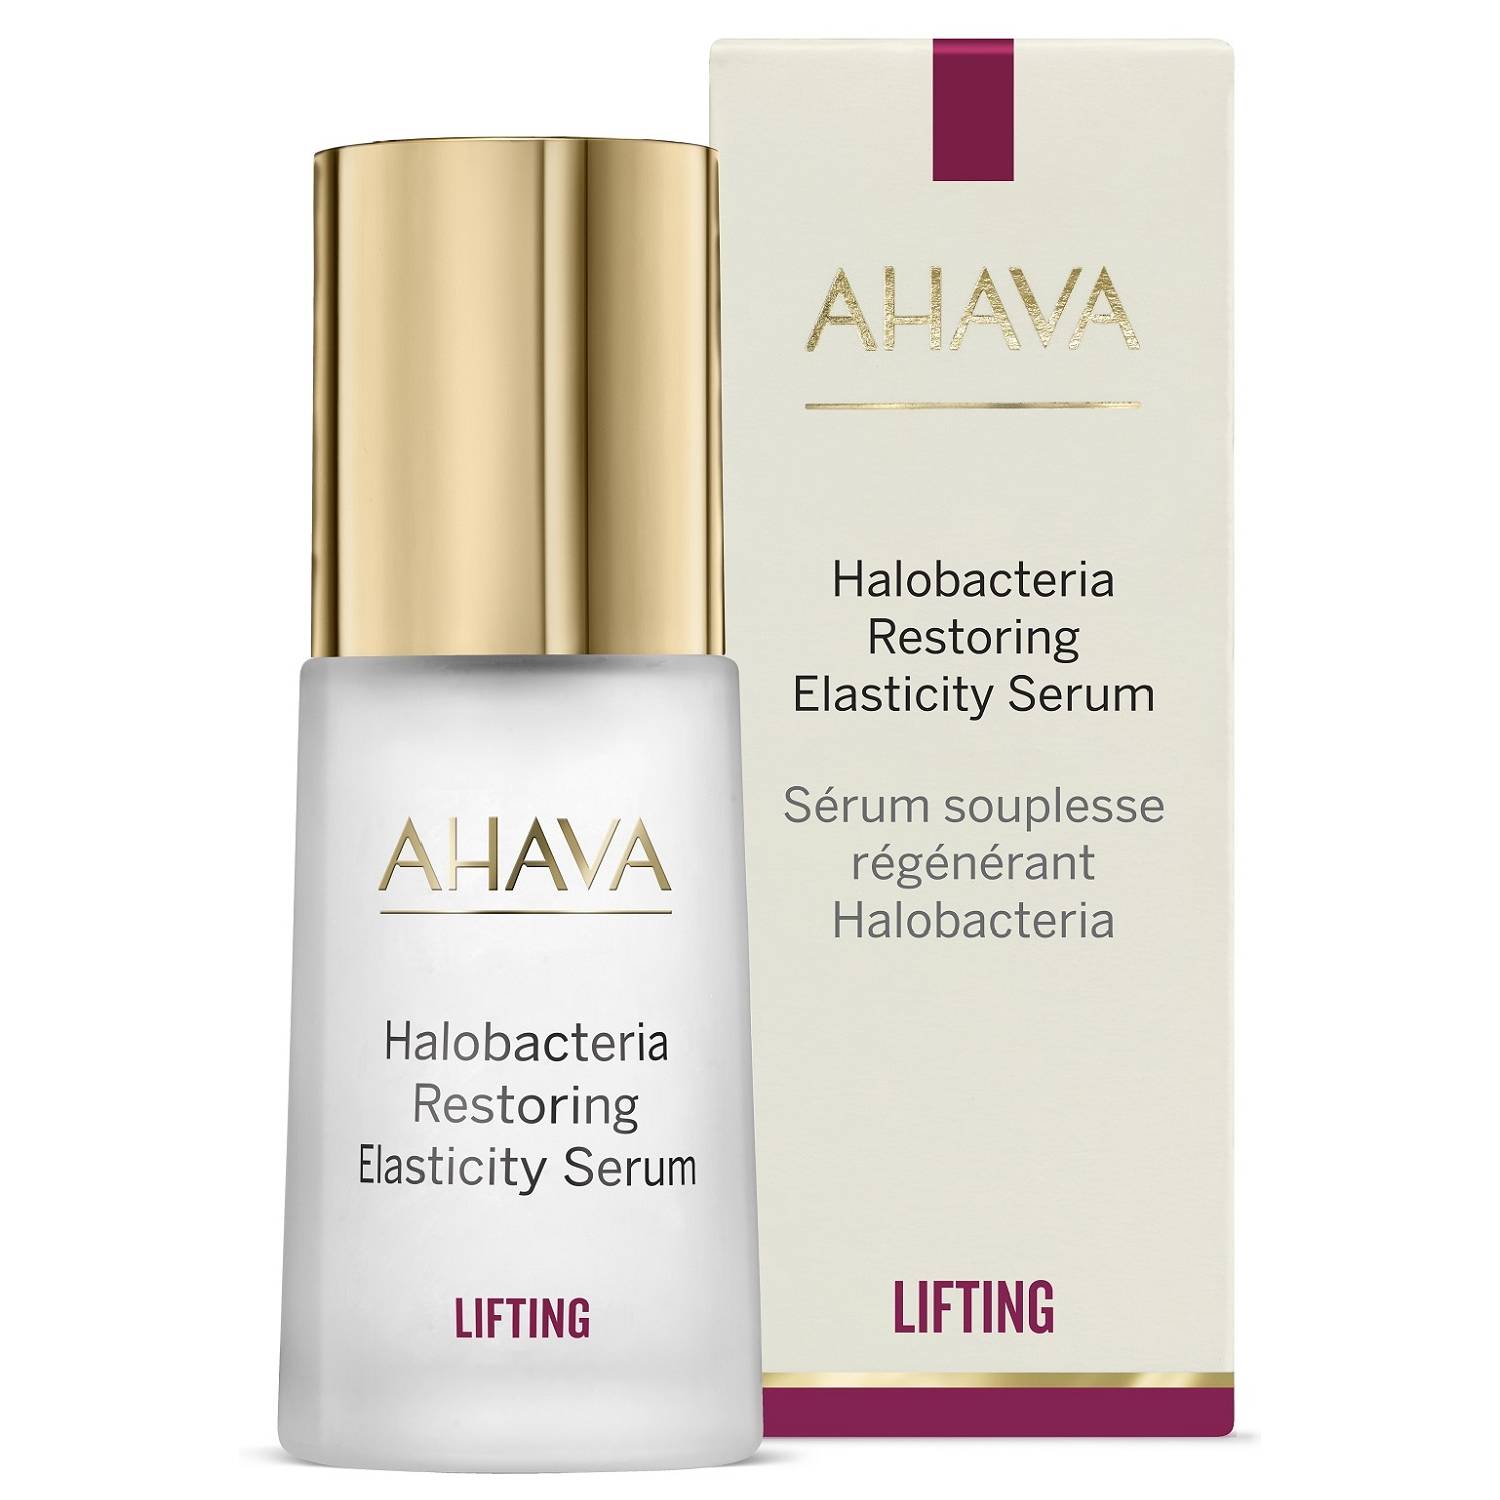 Ahava Сыворотка для восстановления эластичности кожи лица Restoring Elasticity Serum, 30 мл (Ahava, Halobacteria)